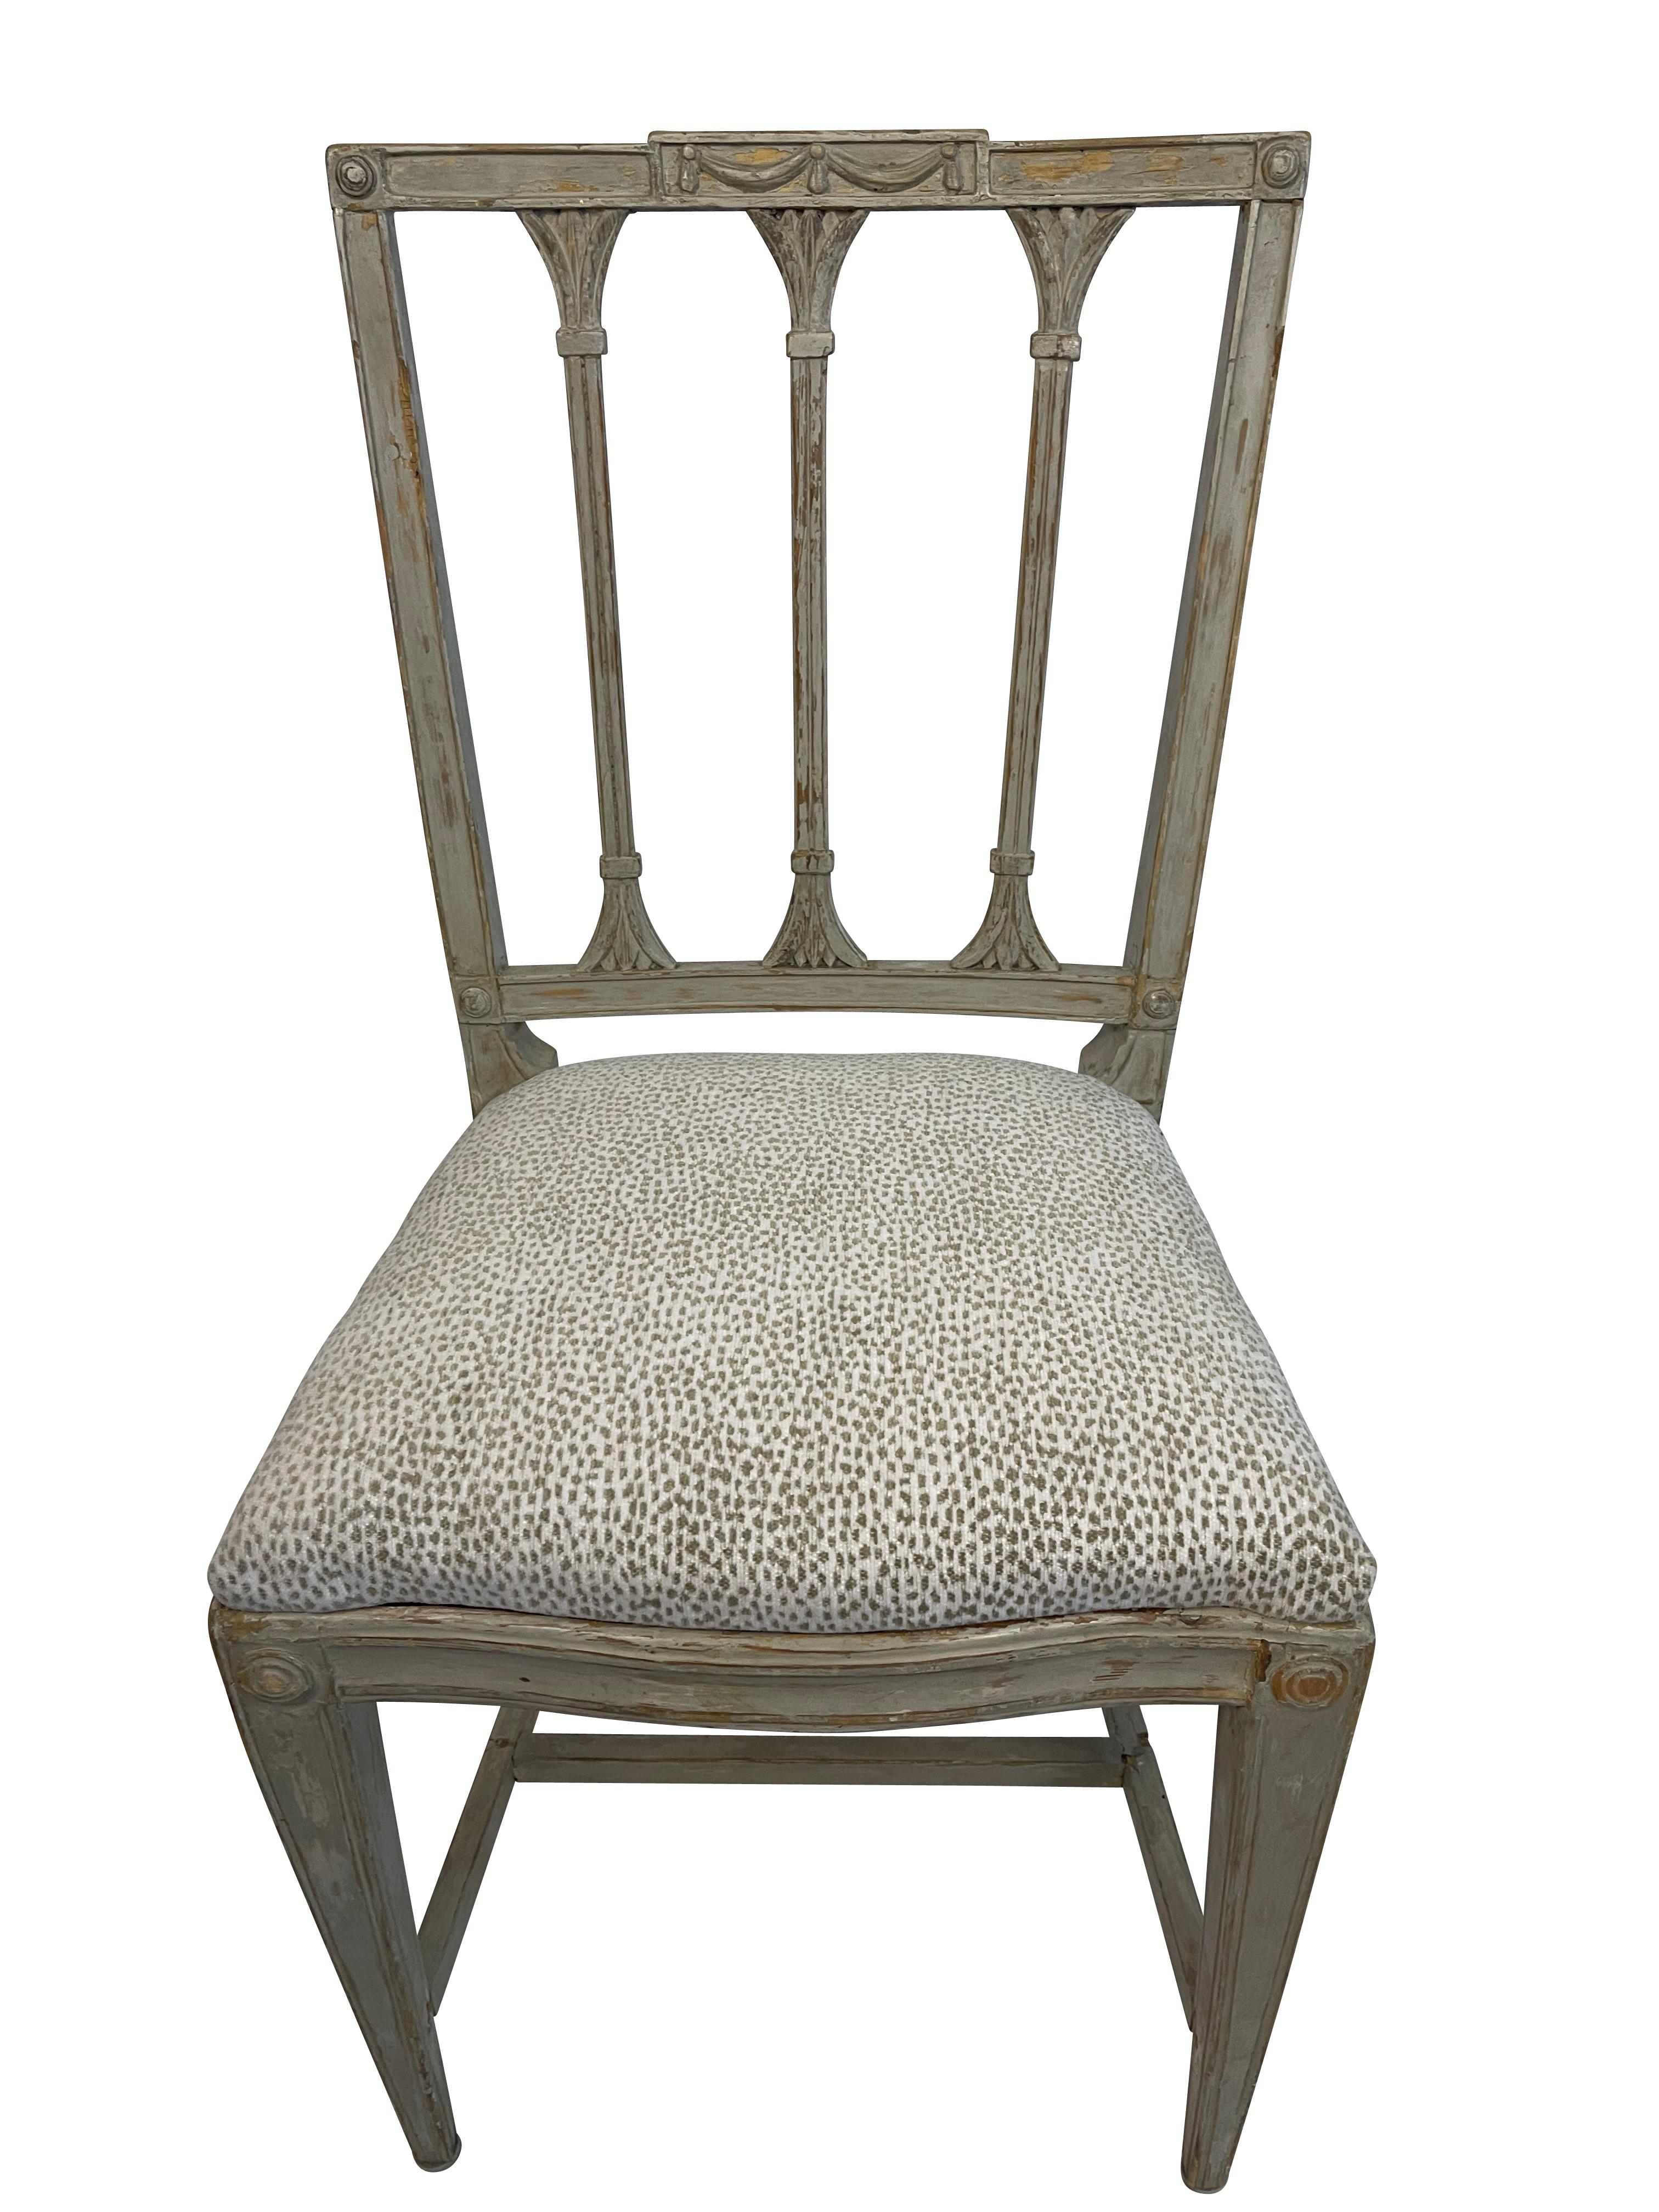 Un ensemble de quatre chaises suédoises néoclassiques d'époque avec une nouvelle tapisserie d'impression animale.  Les trois dossiers à lattes présentent des lignes droites et nettes et de belles guirlandes drapées sur le cimier.  Les dossiers à